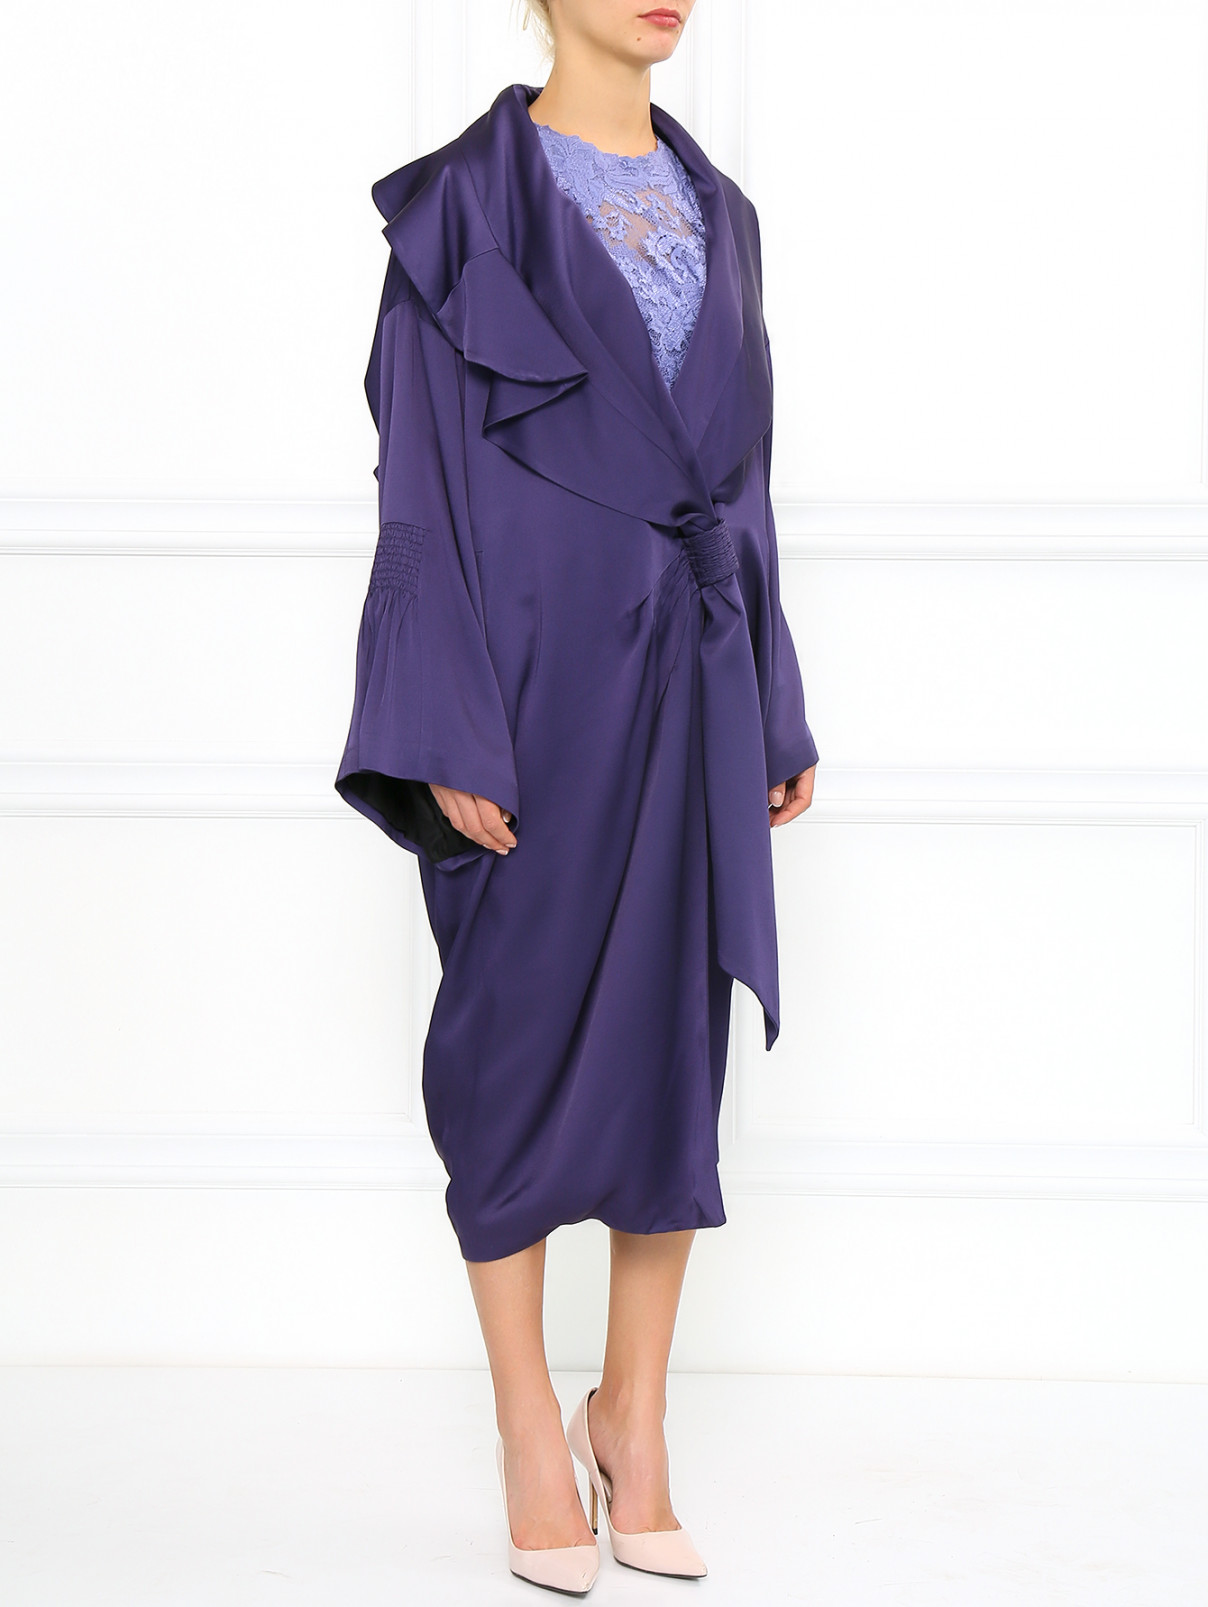 Пальто с декоративной застежкой с отверстиями в рукавах John Galliano  –  Модель Общий вид  – Цвет:  Фиолетовый